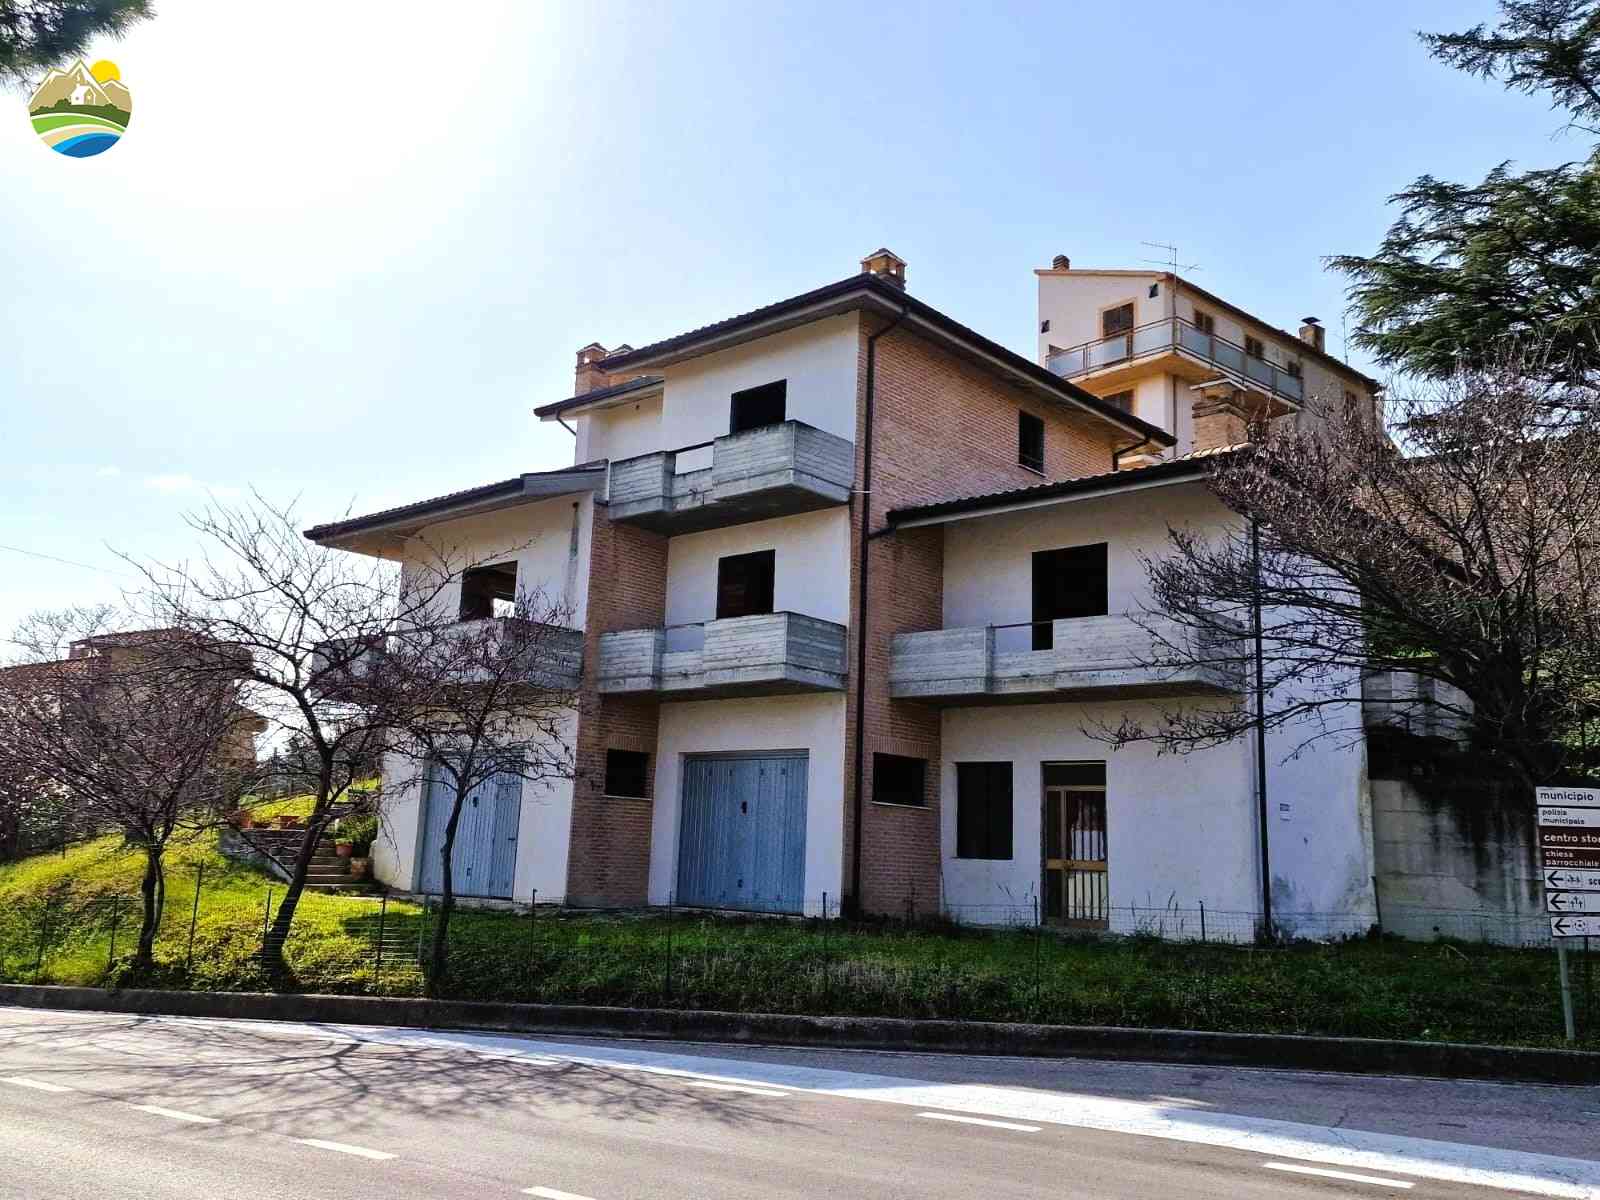 Villa Villa for sale Castilenti (TE), Villa Mandorlo - Castilenti - EUR 128.425 10